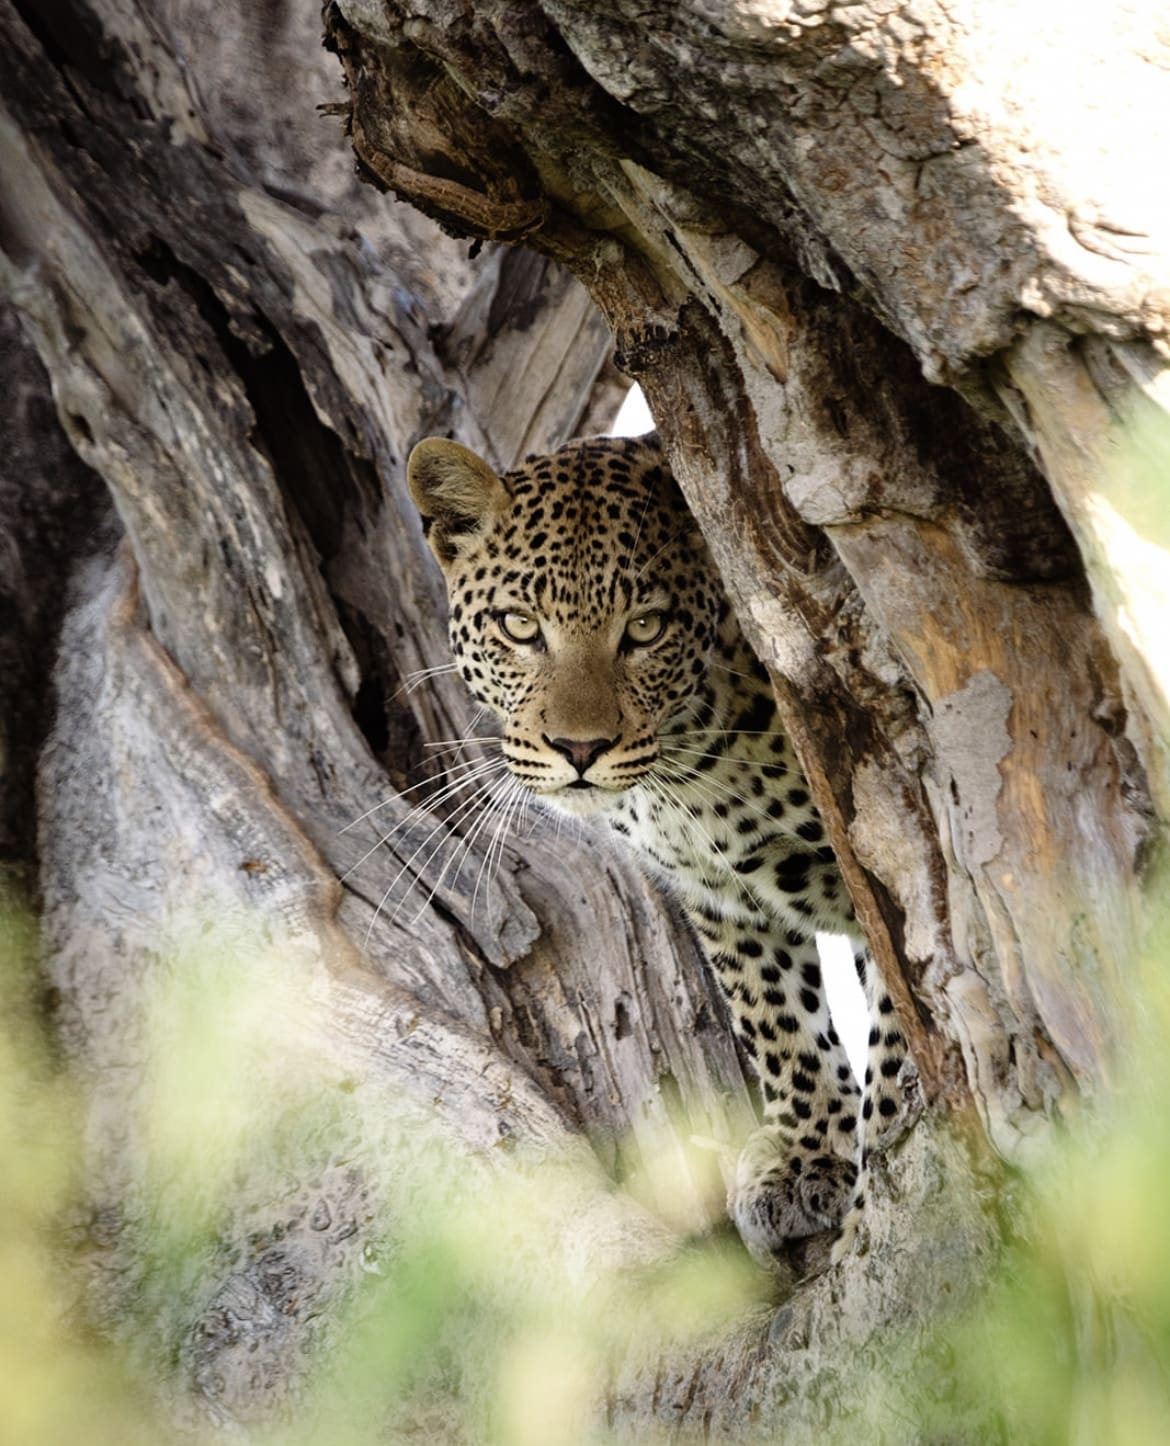 Leopard hiding in a tree